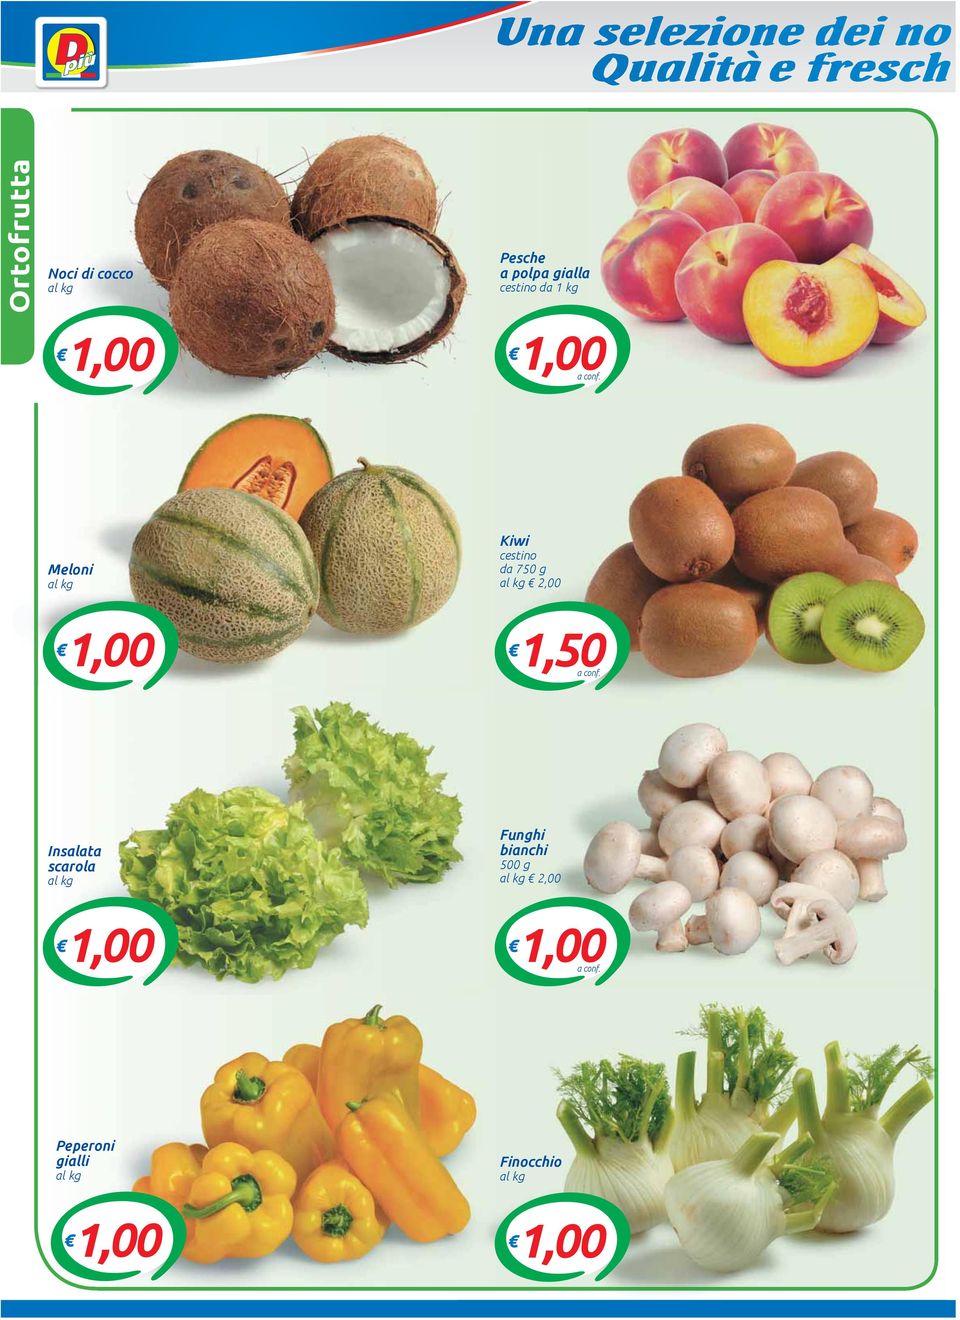 Meloni Kiwi cestino da 750 g 2,00 1,00 1,50a conf.